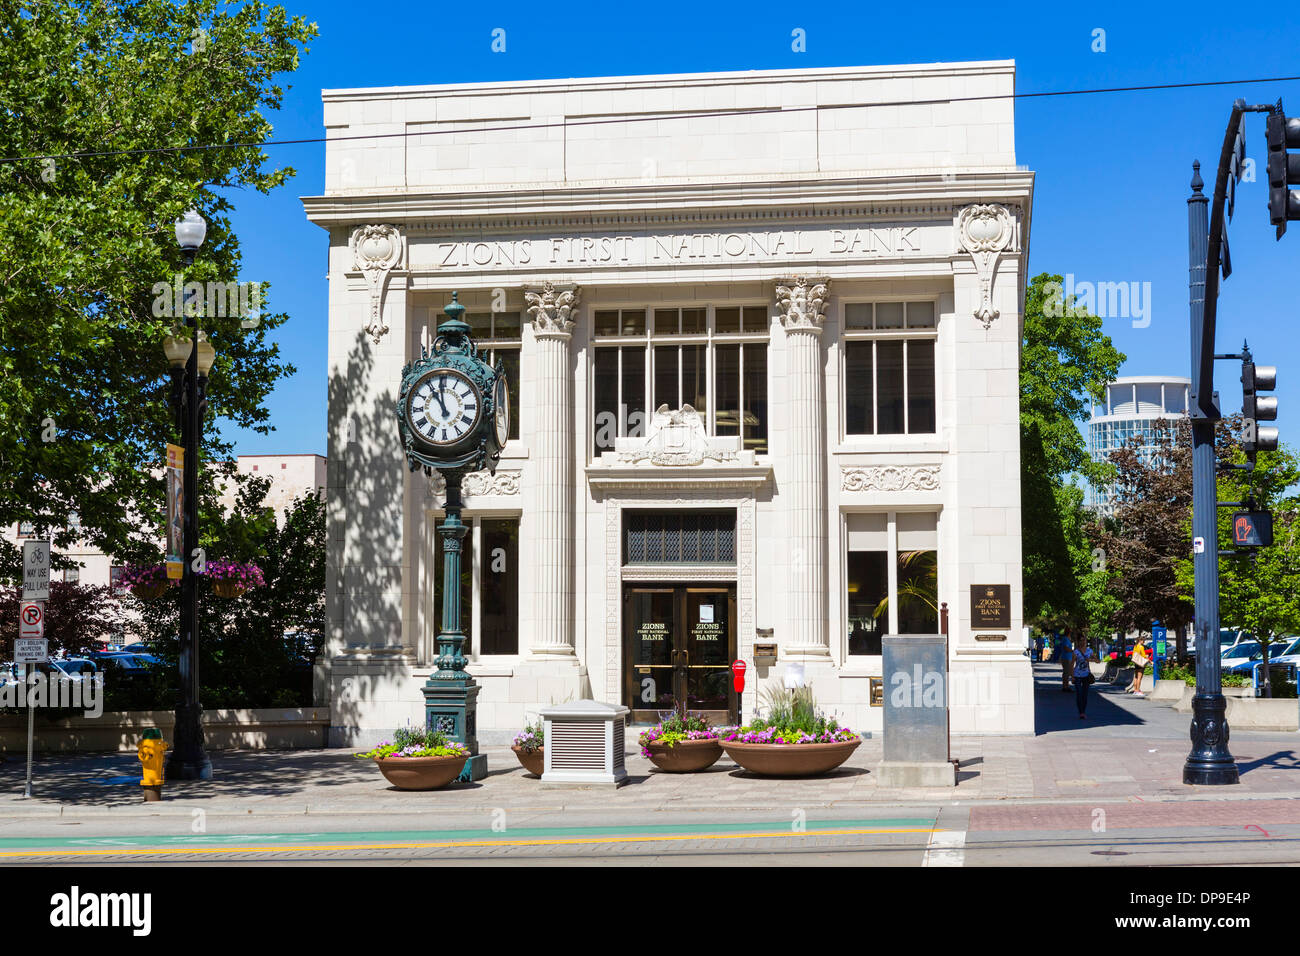 La première succursale de la Banque nationale Zions on Main Street dans le centre-ville de Salt Lake City, Utah, USA Banque D'Images